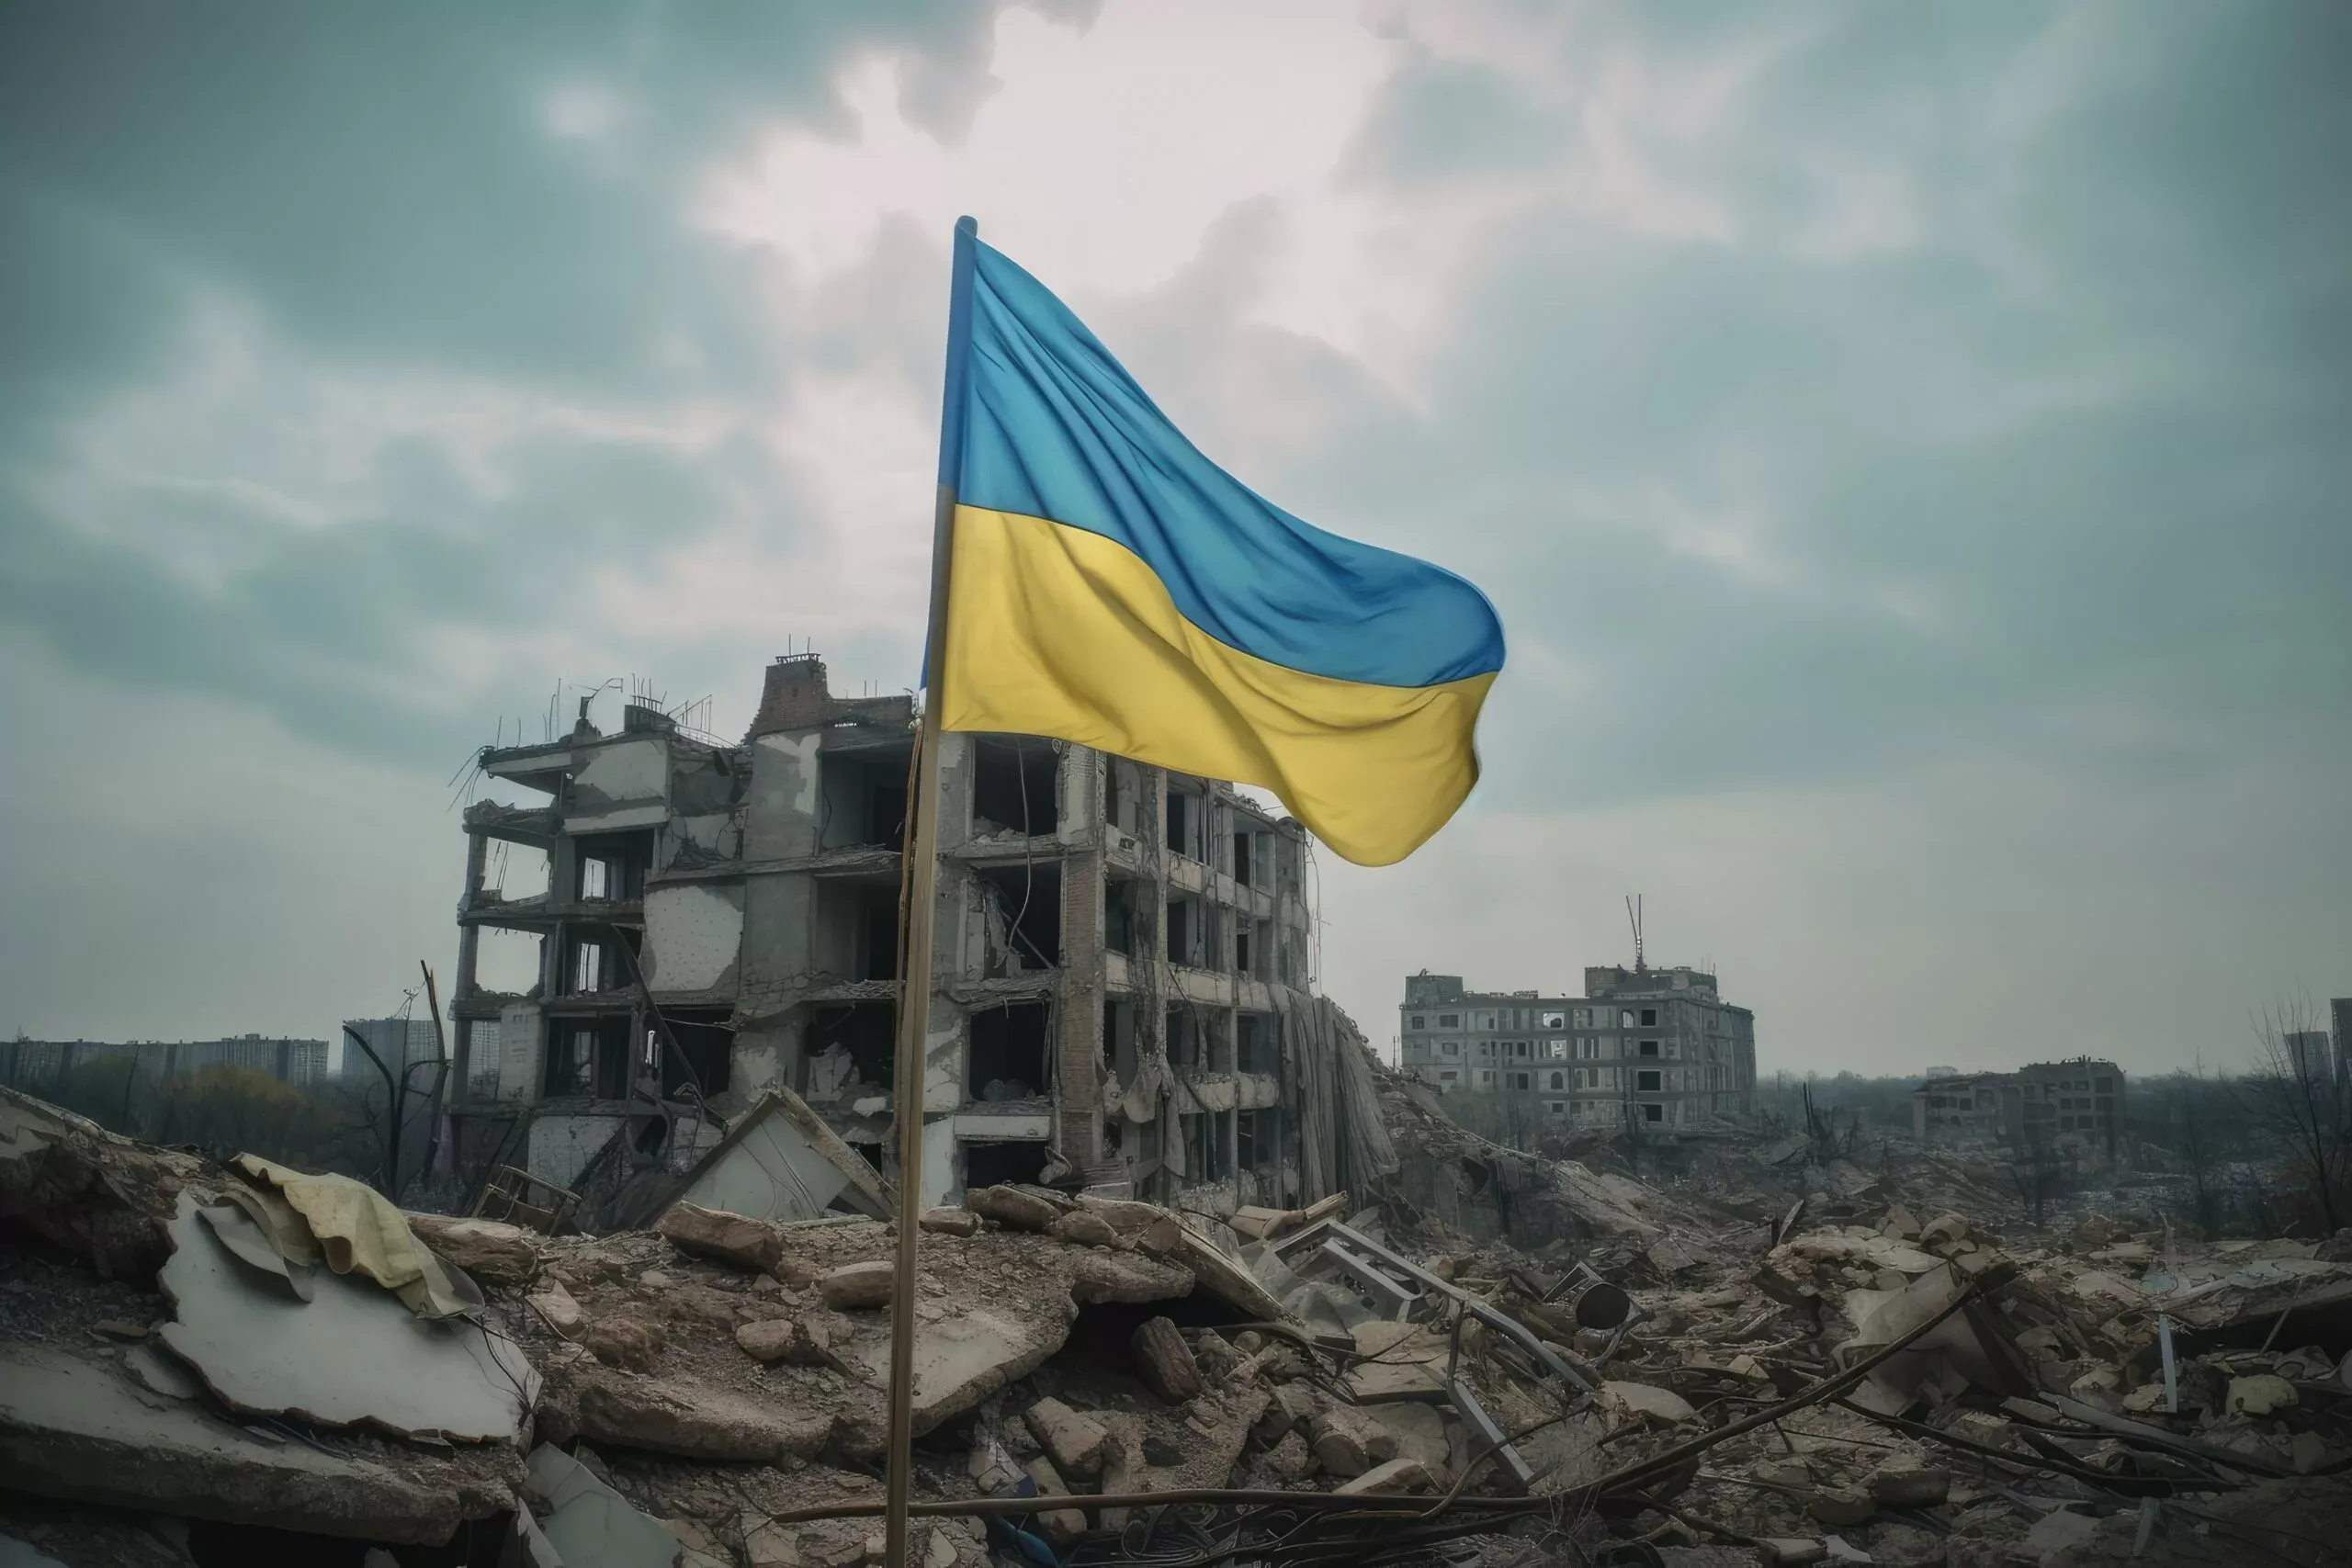 Прапор України майорить на зруйнованій будівлі в місті, символ надії та наполегливості